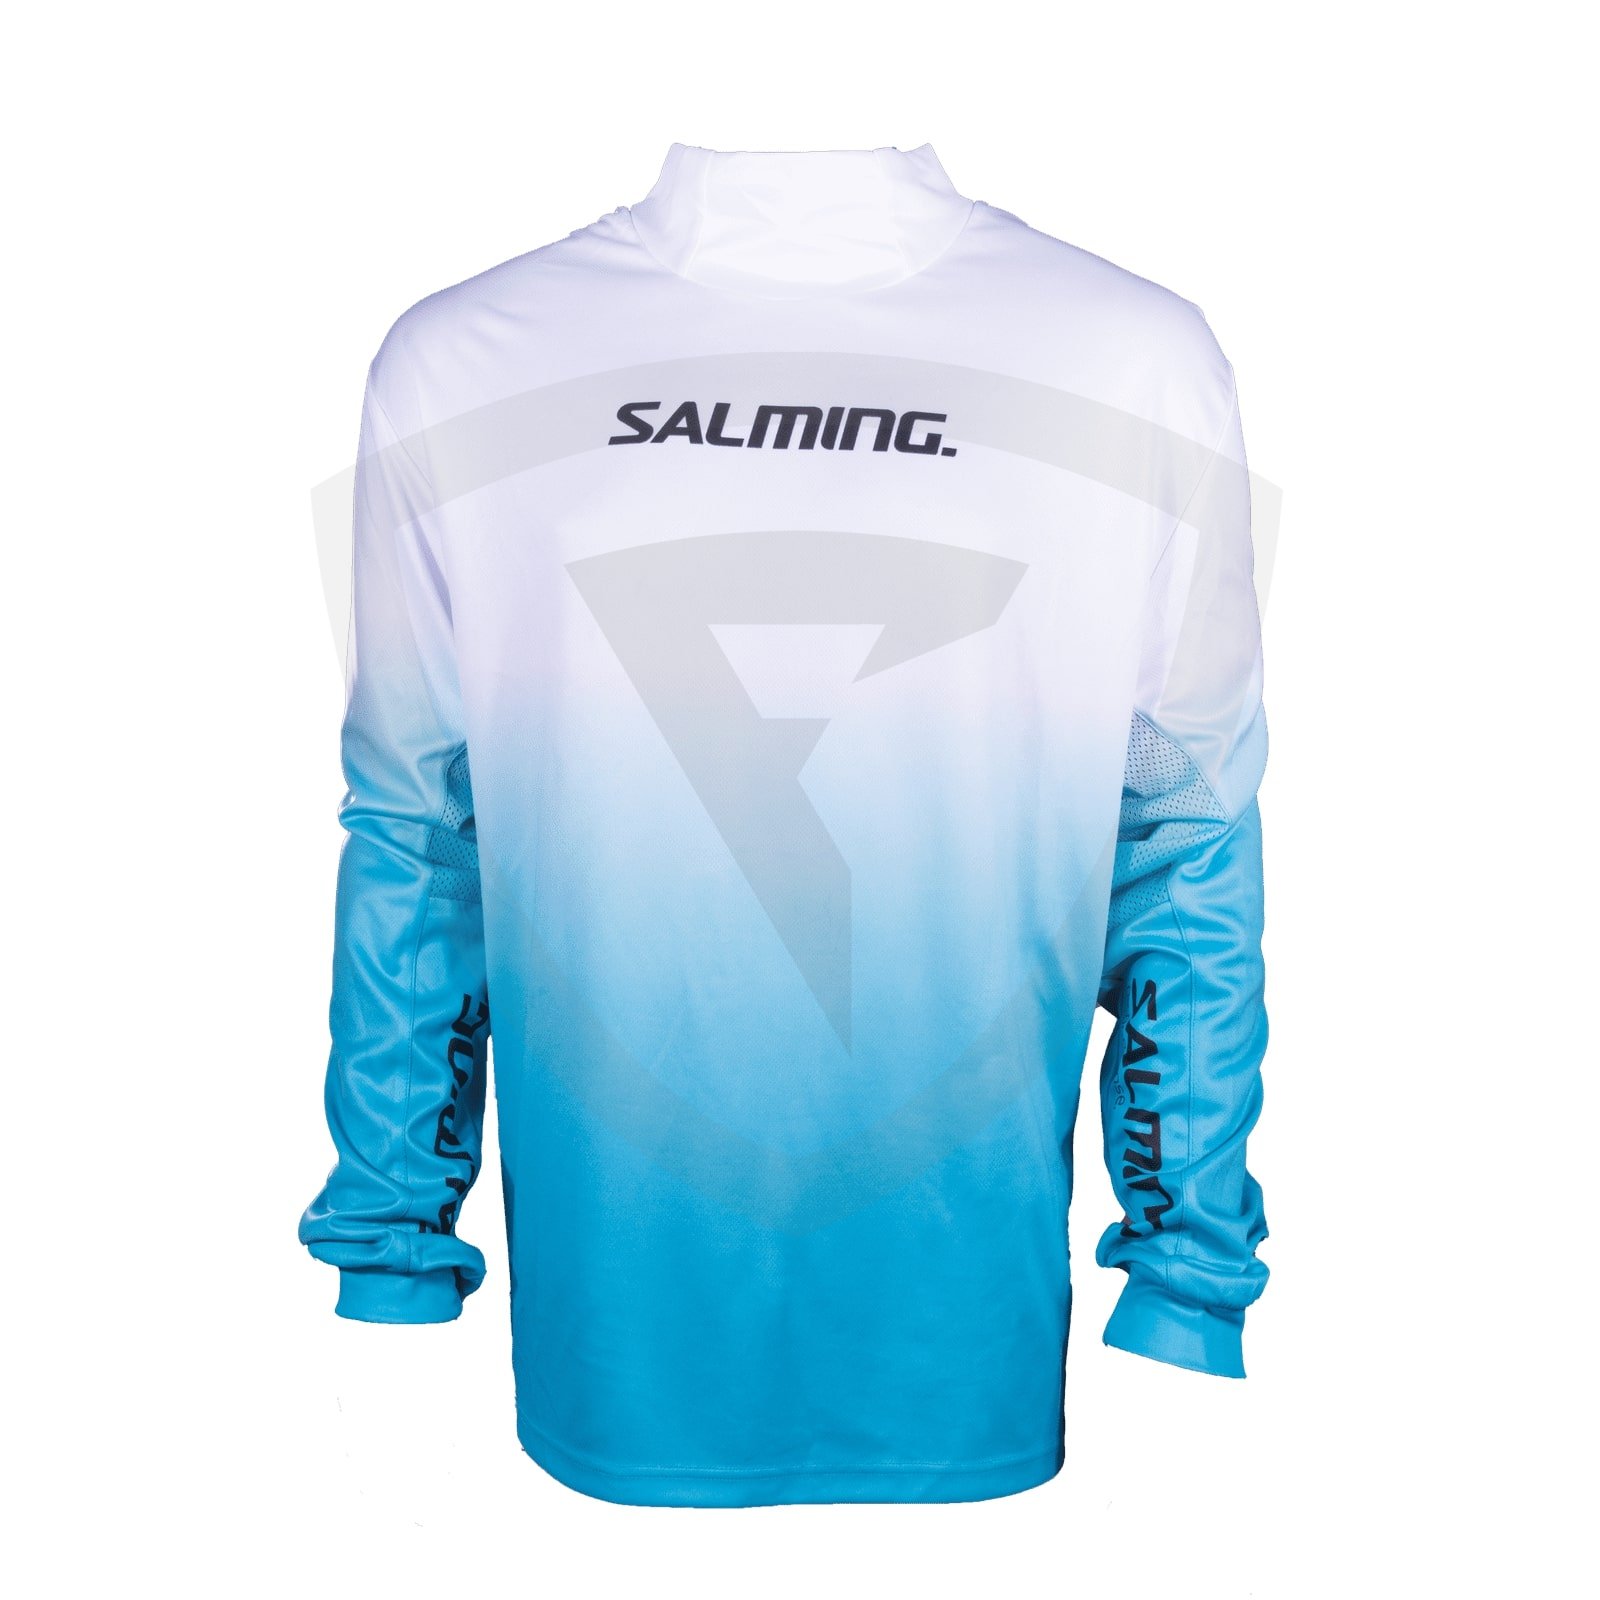 Salming Goalie Jersey SR Blue-White S modrá-bílá